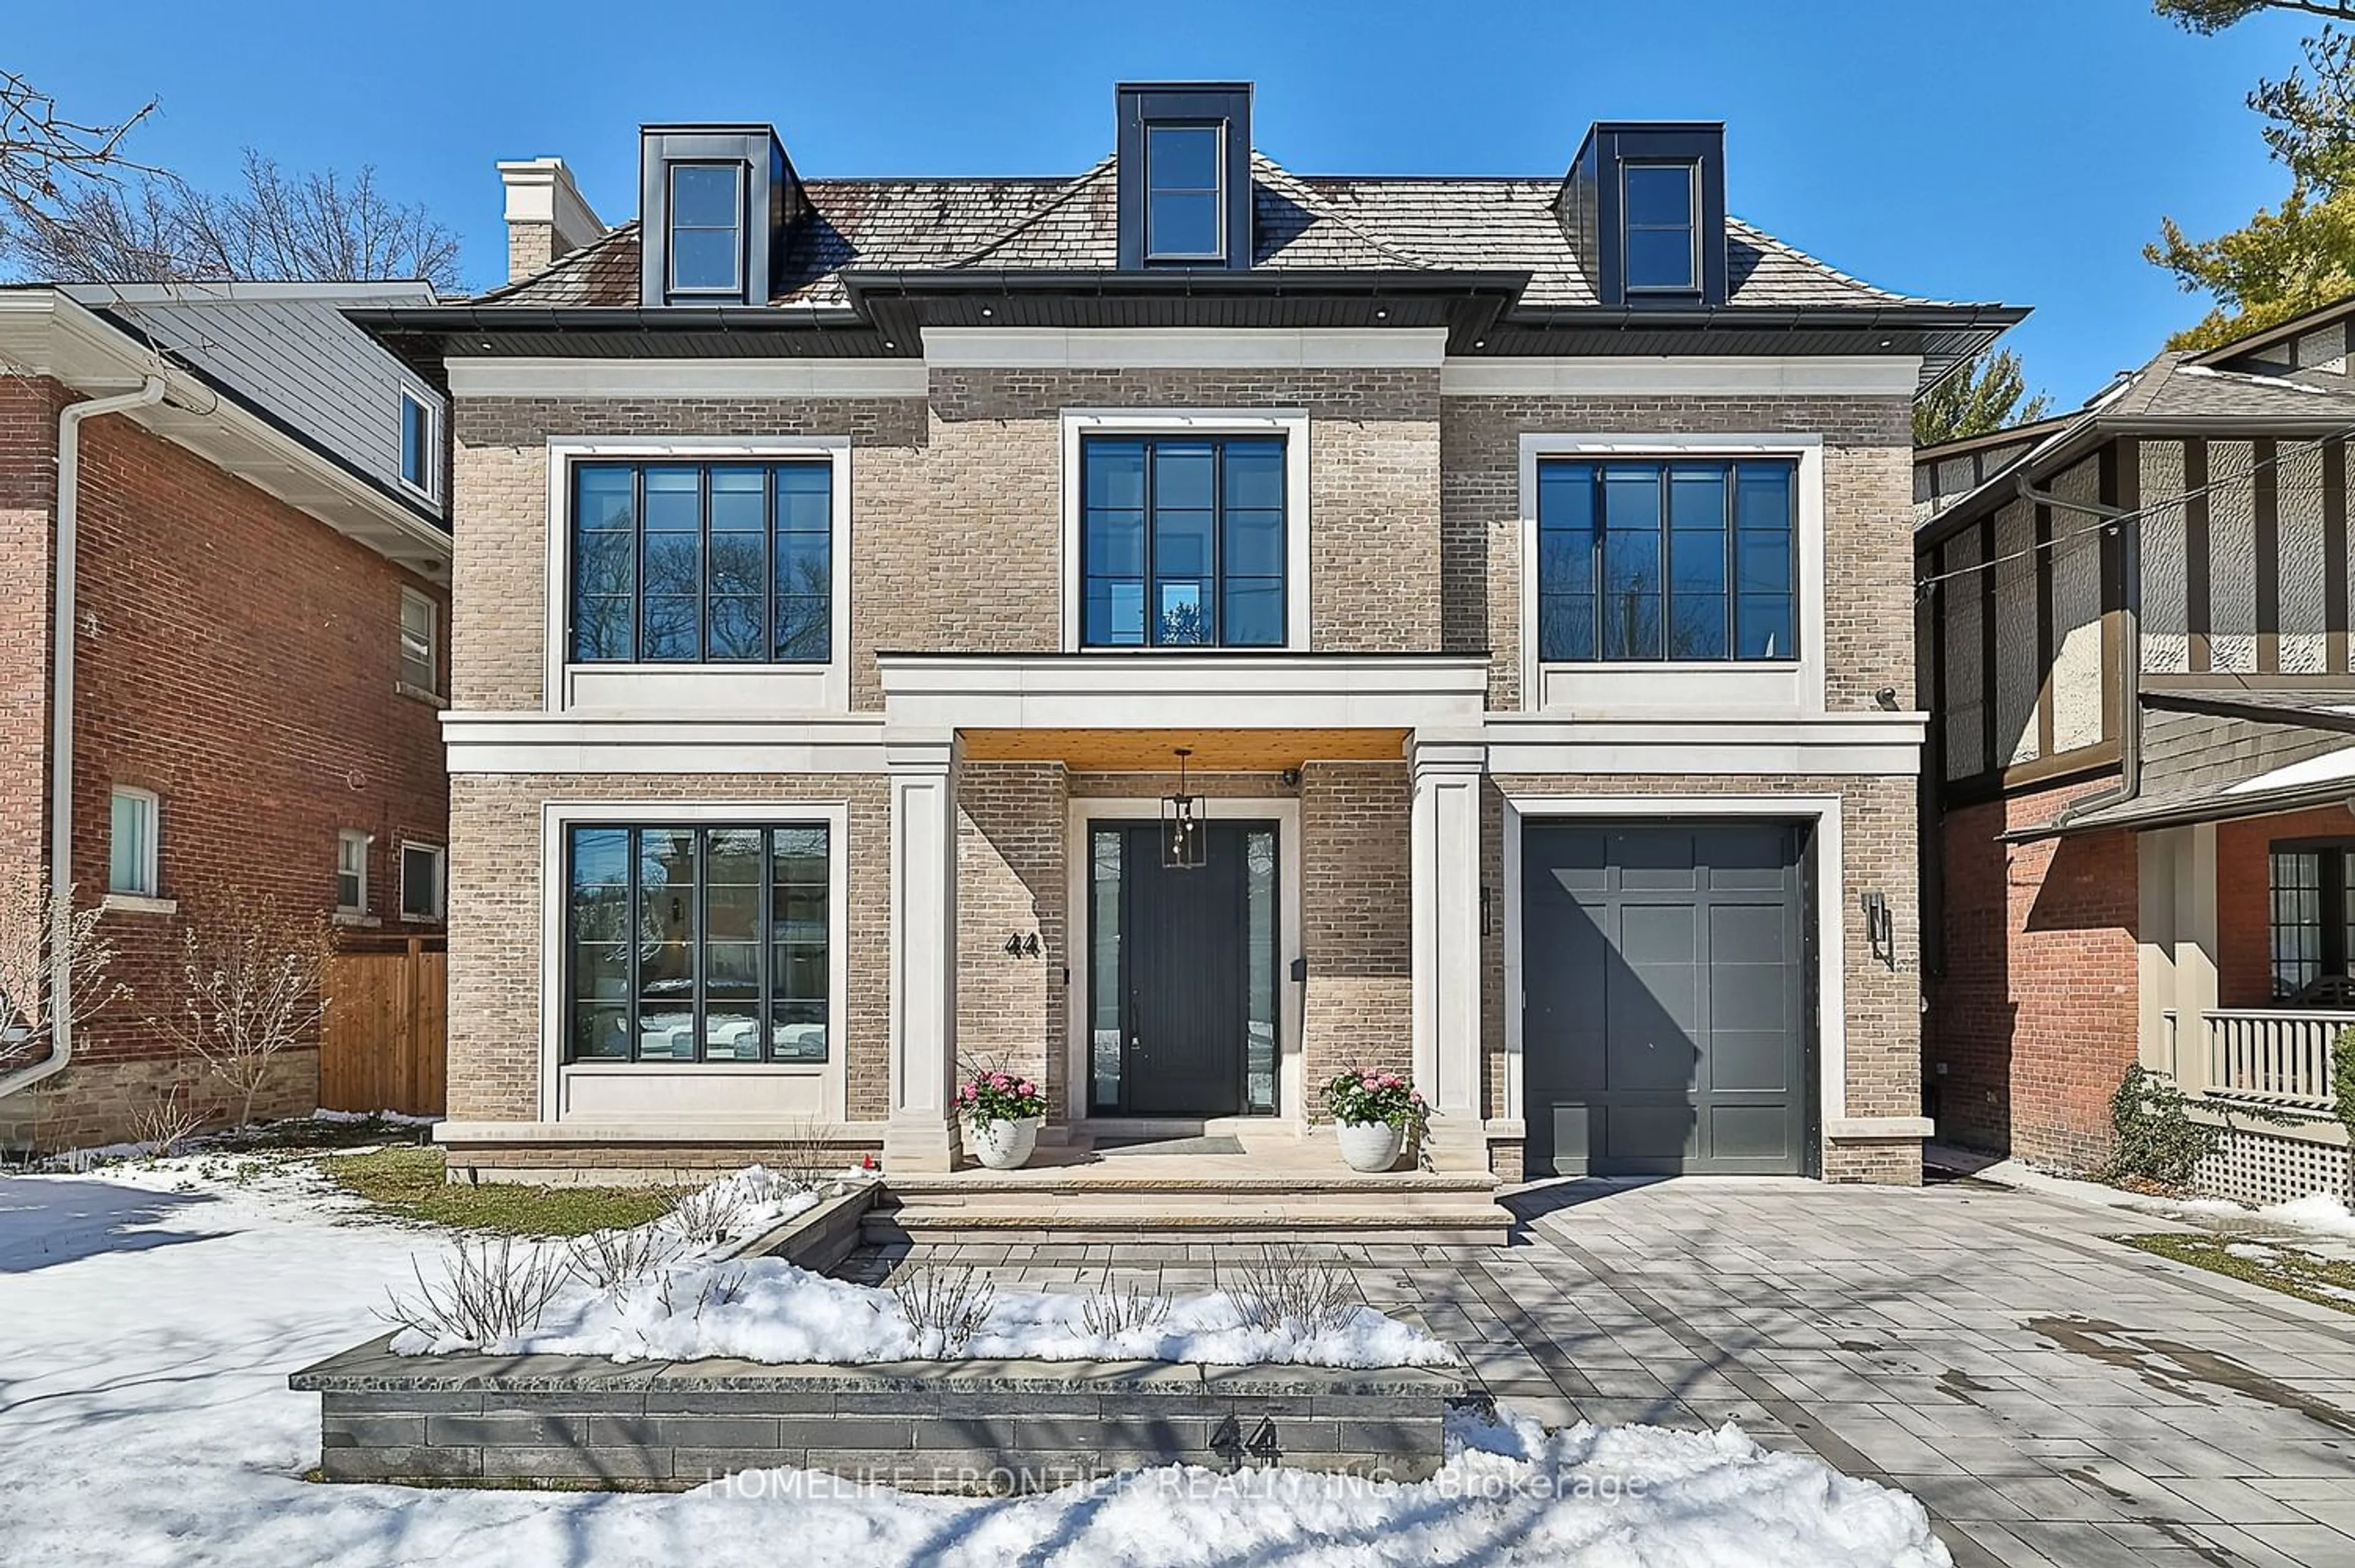 Home with brick exterior material for 44 Alexandra Blvd, Toronto Ontario M4R 1L7